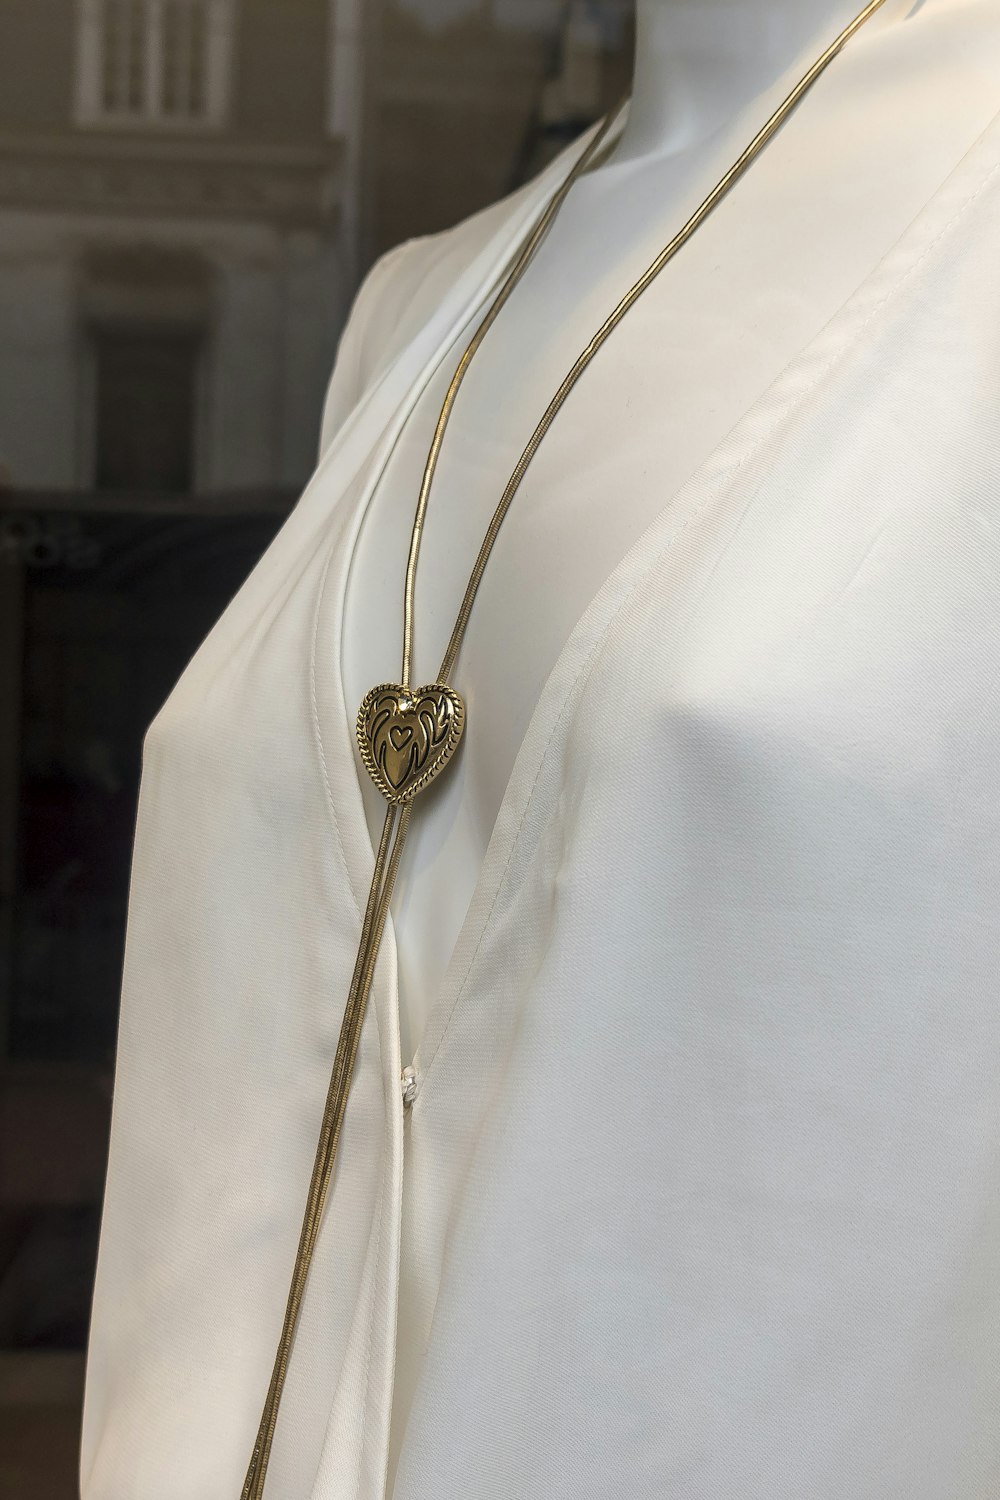 Goldene runde Anhänger Halskette auf weißem Textil